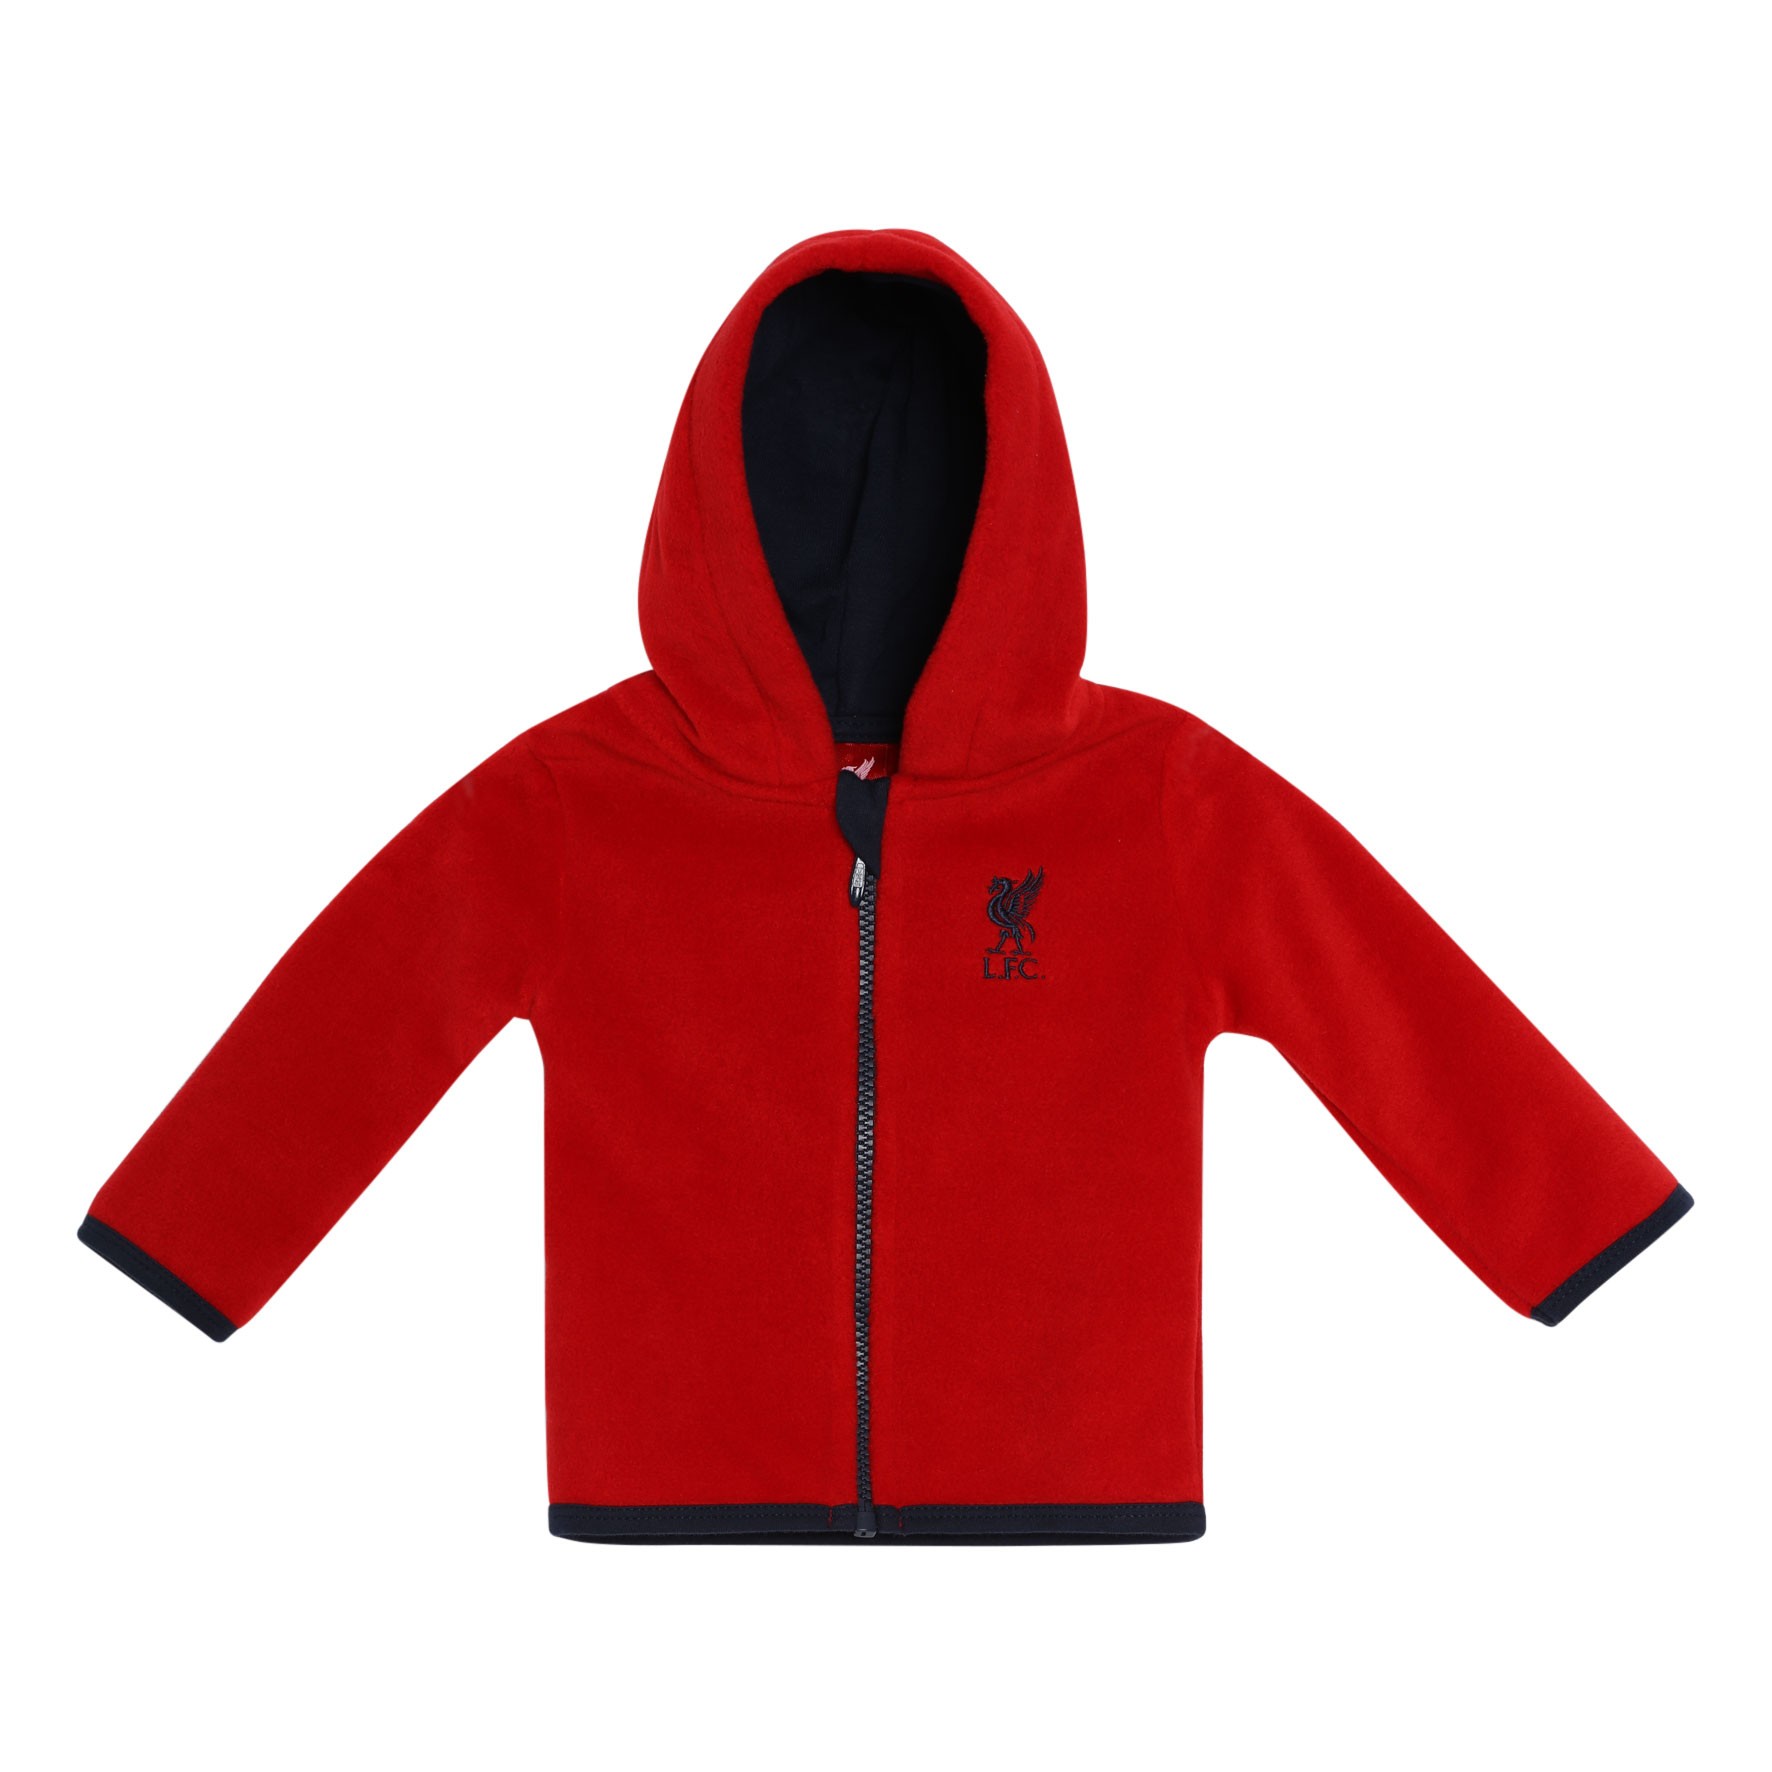 LFC Baby Red Zip Through Fleece